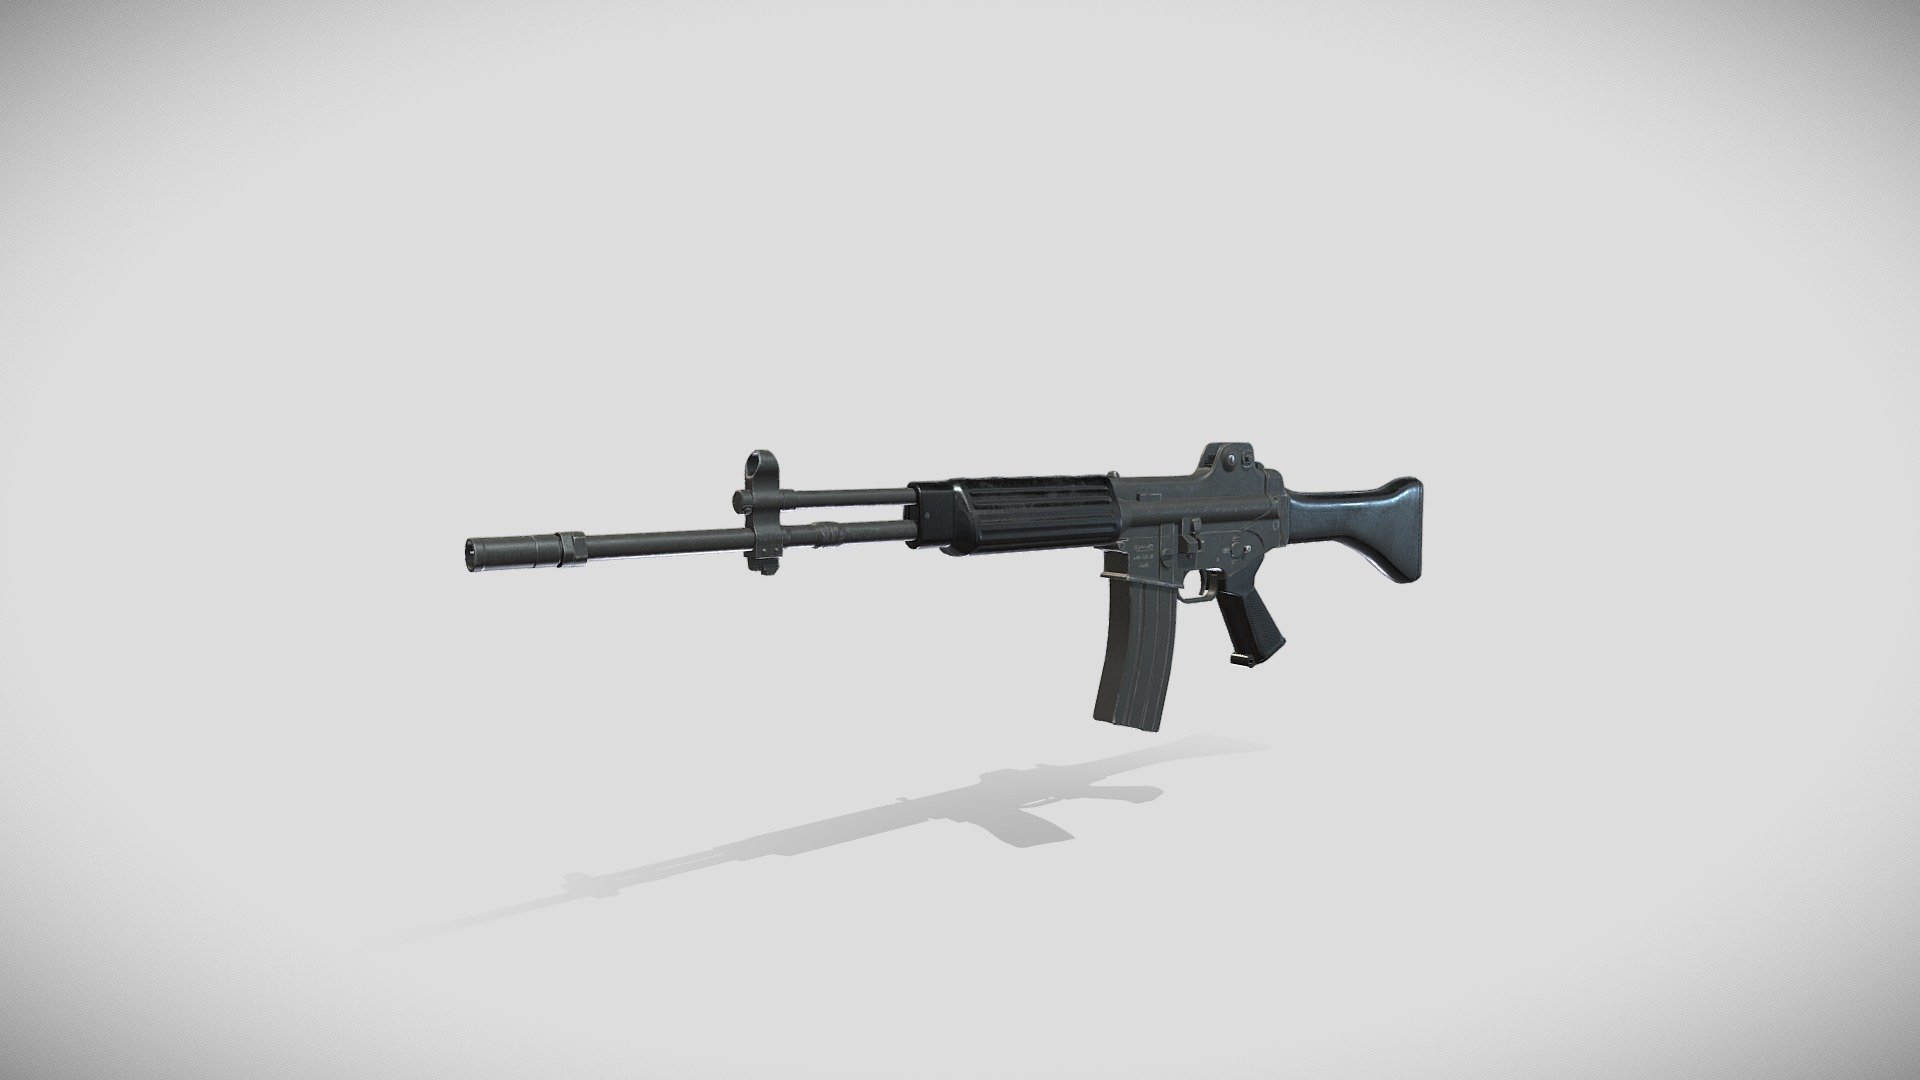 K2_ kor_service rifle - 3D model by pipiano00 (@pipiano00) [cb34318]